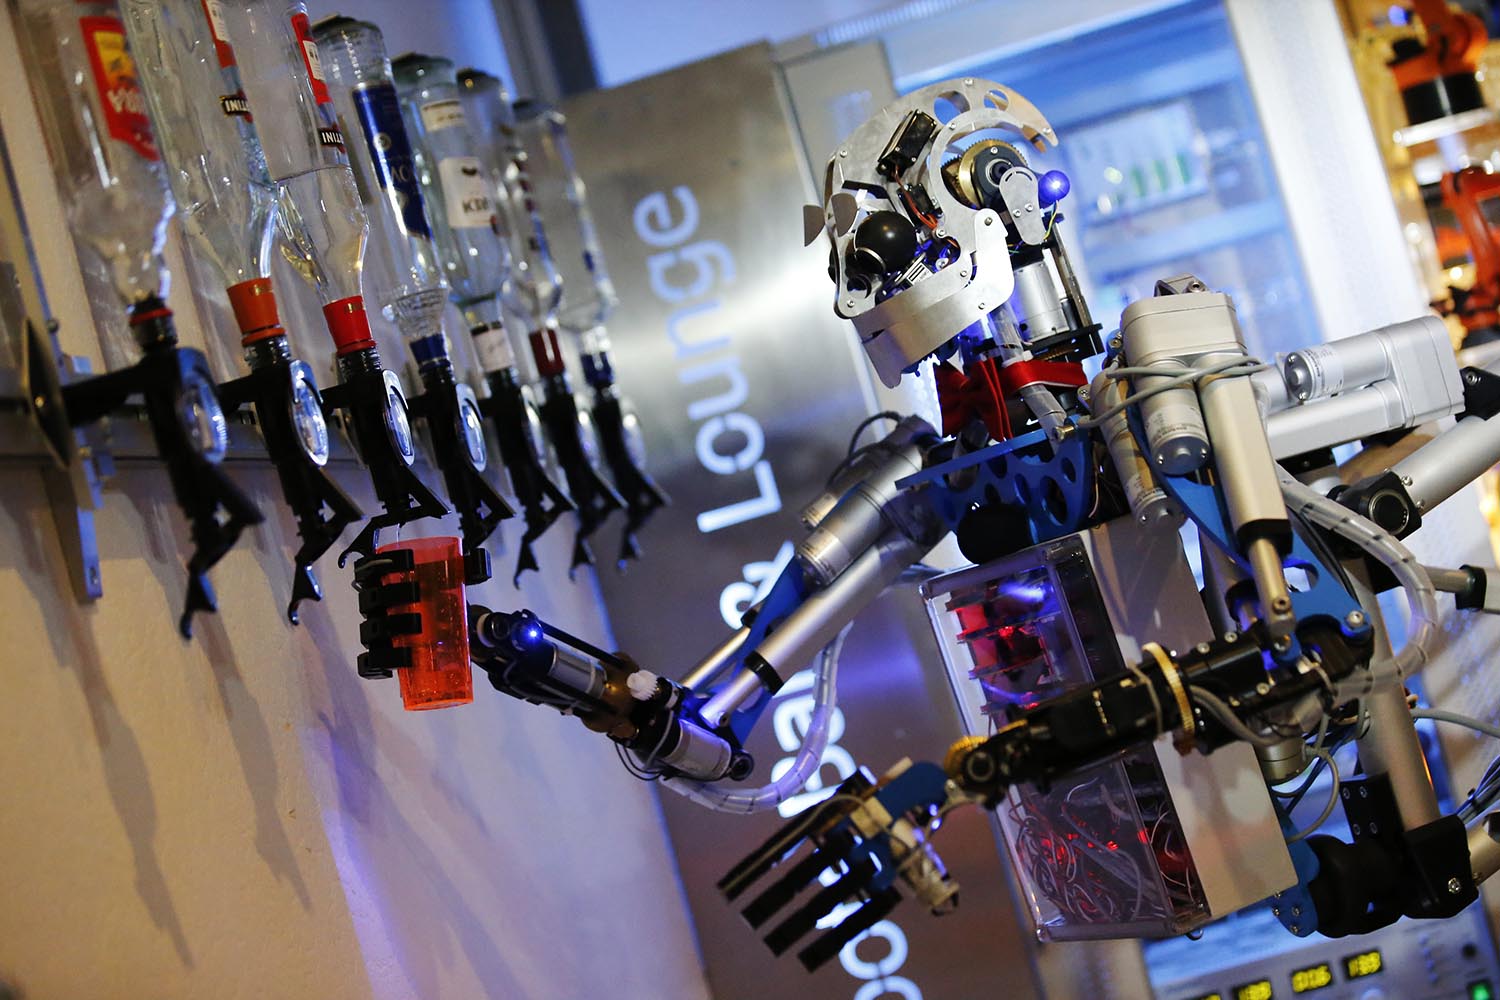 Especial mundo robot. Carl, el robot humanoide desarrollado y construido por Ben Schaefer